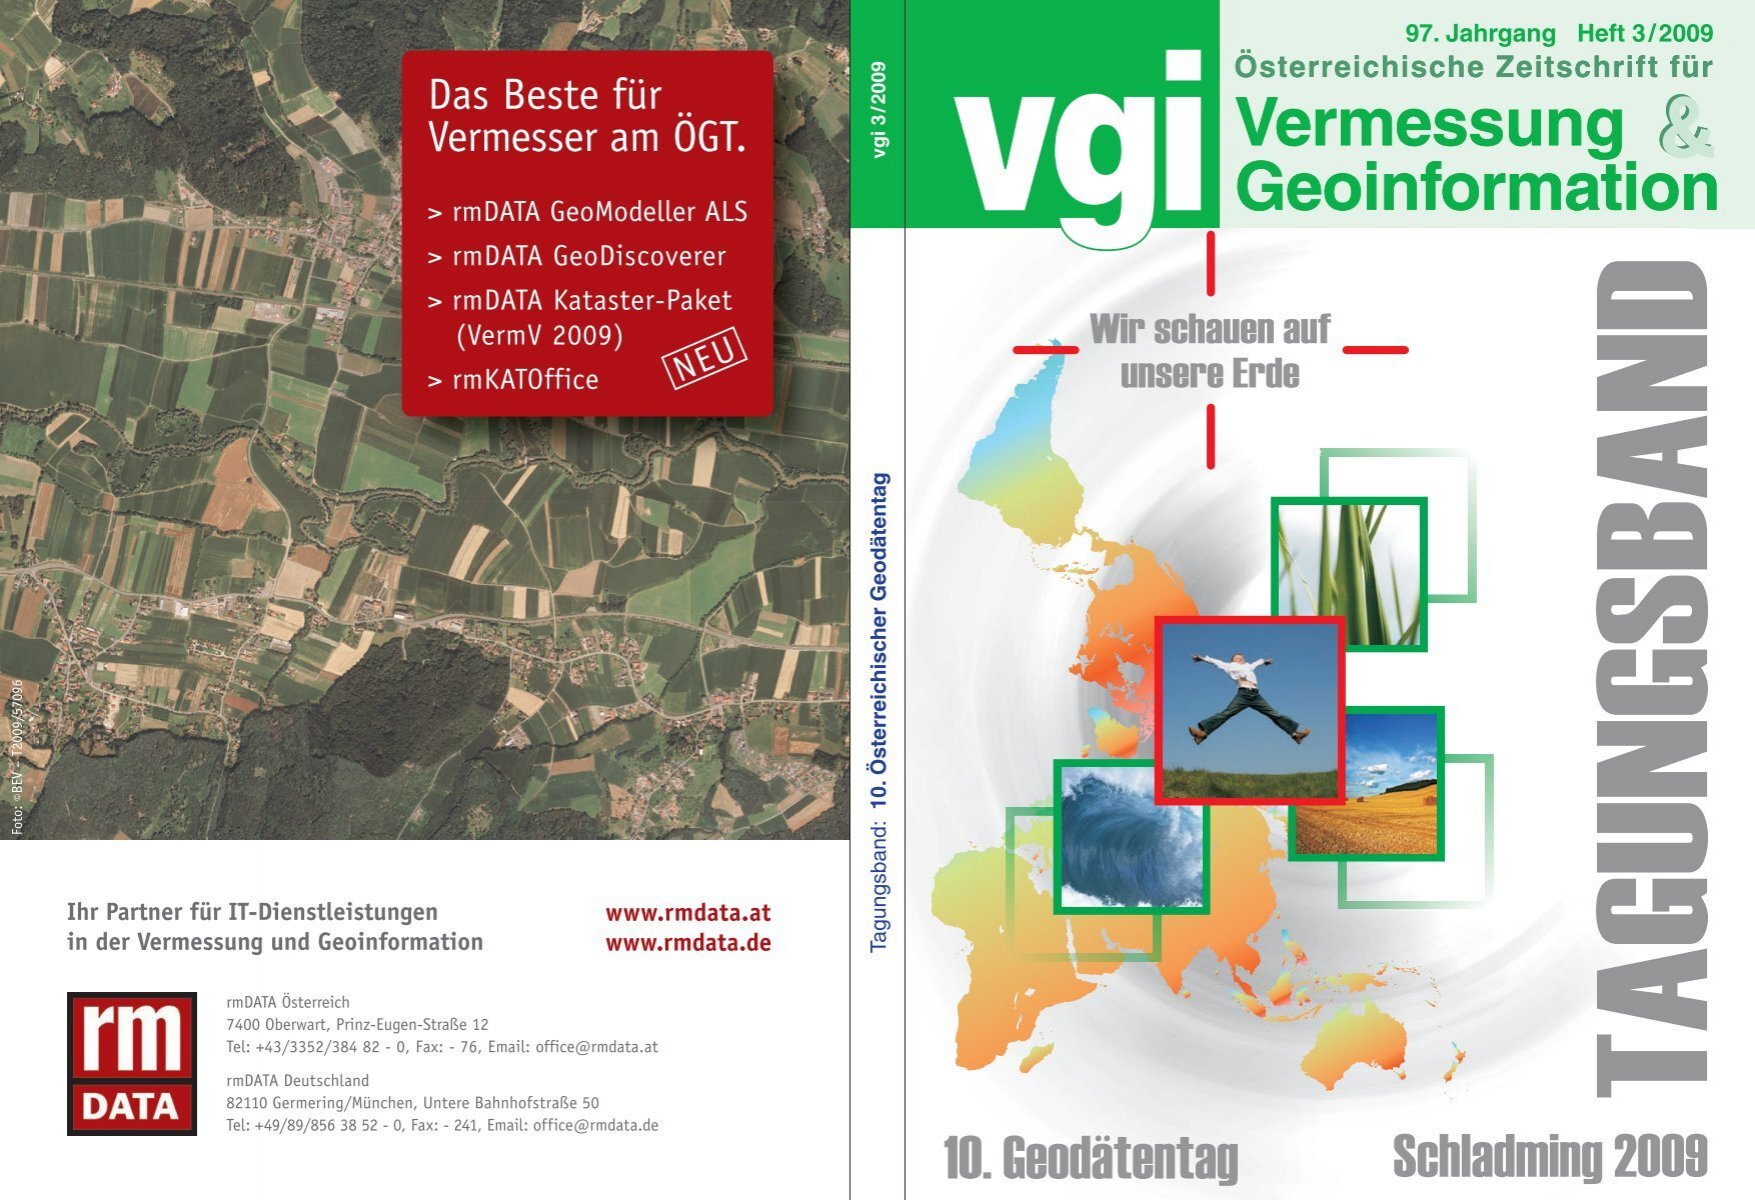 Vermessung Geoinformation Vermessung  - Geodaetentag.at